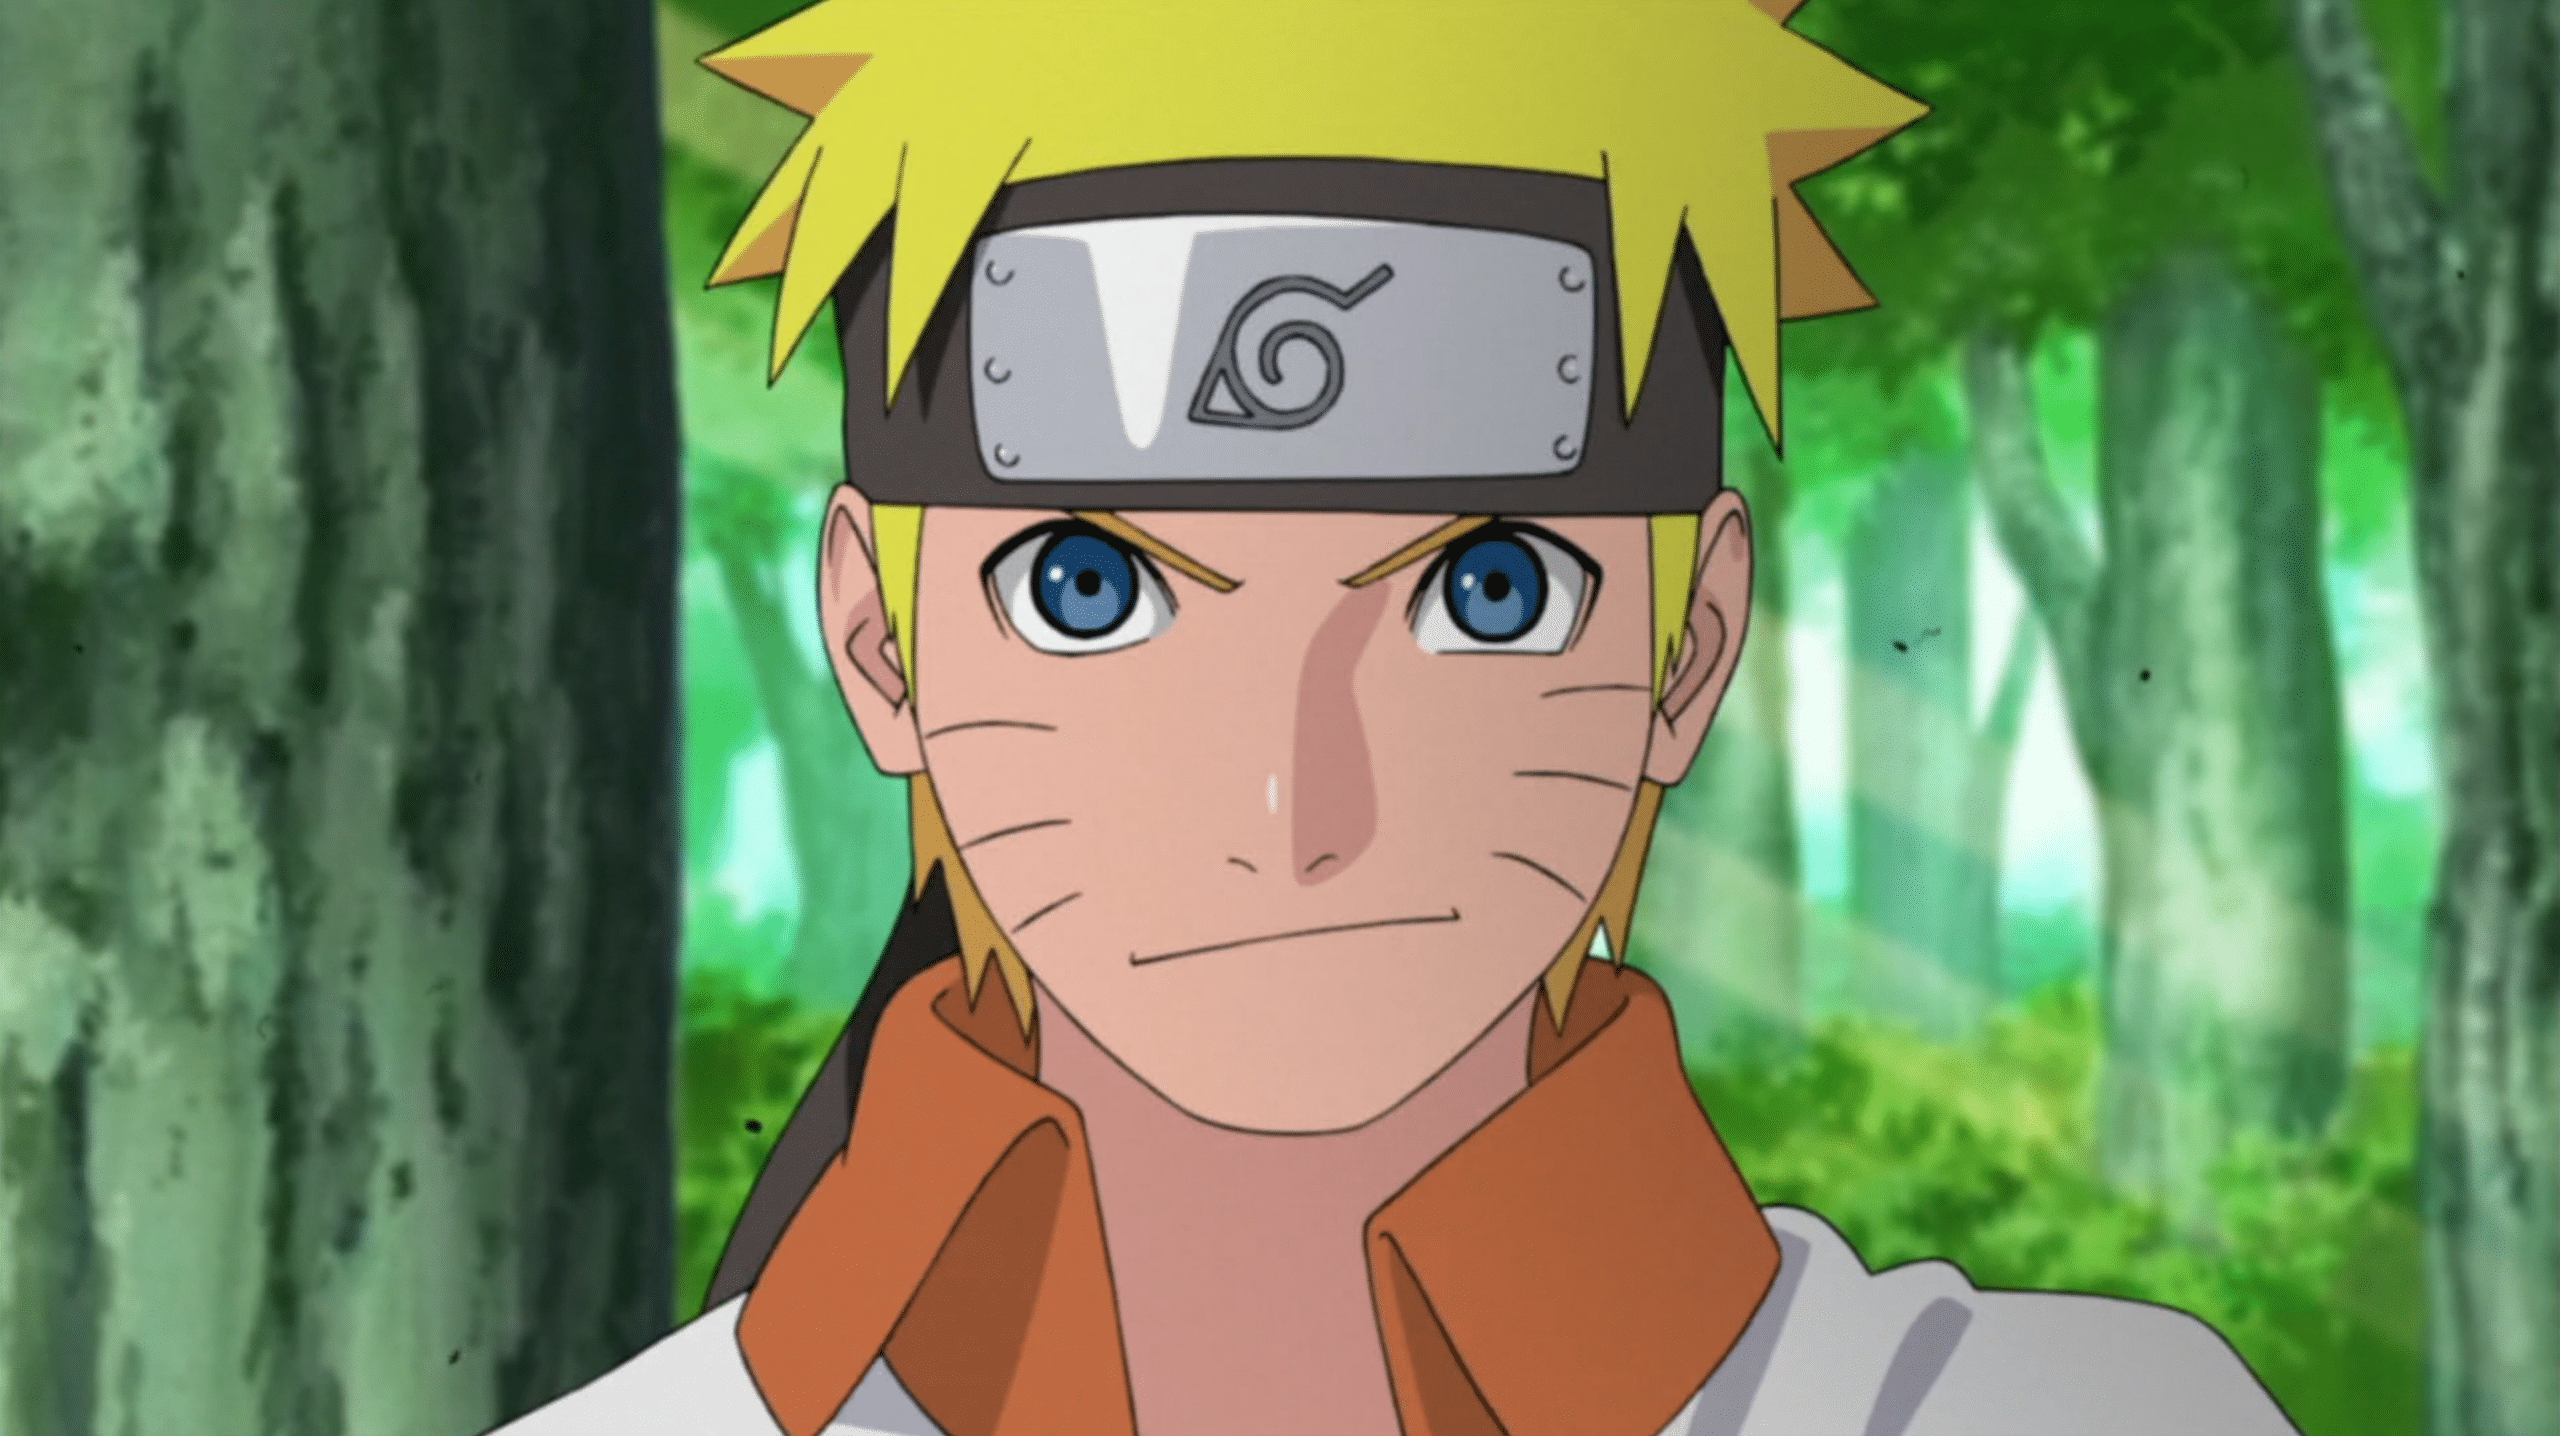 Altura Naruto clássico #naruto #sakura #sasuke #foryou #fy #fyy